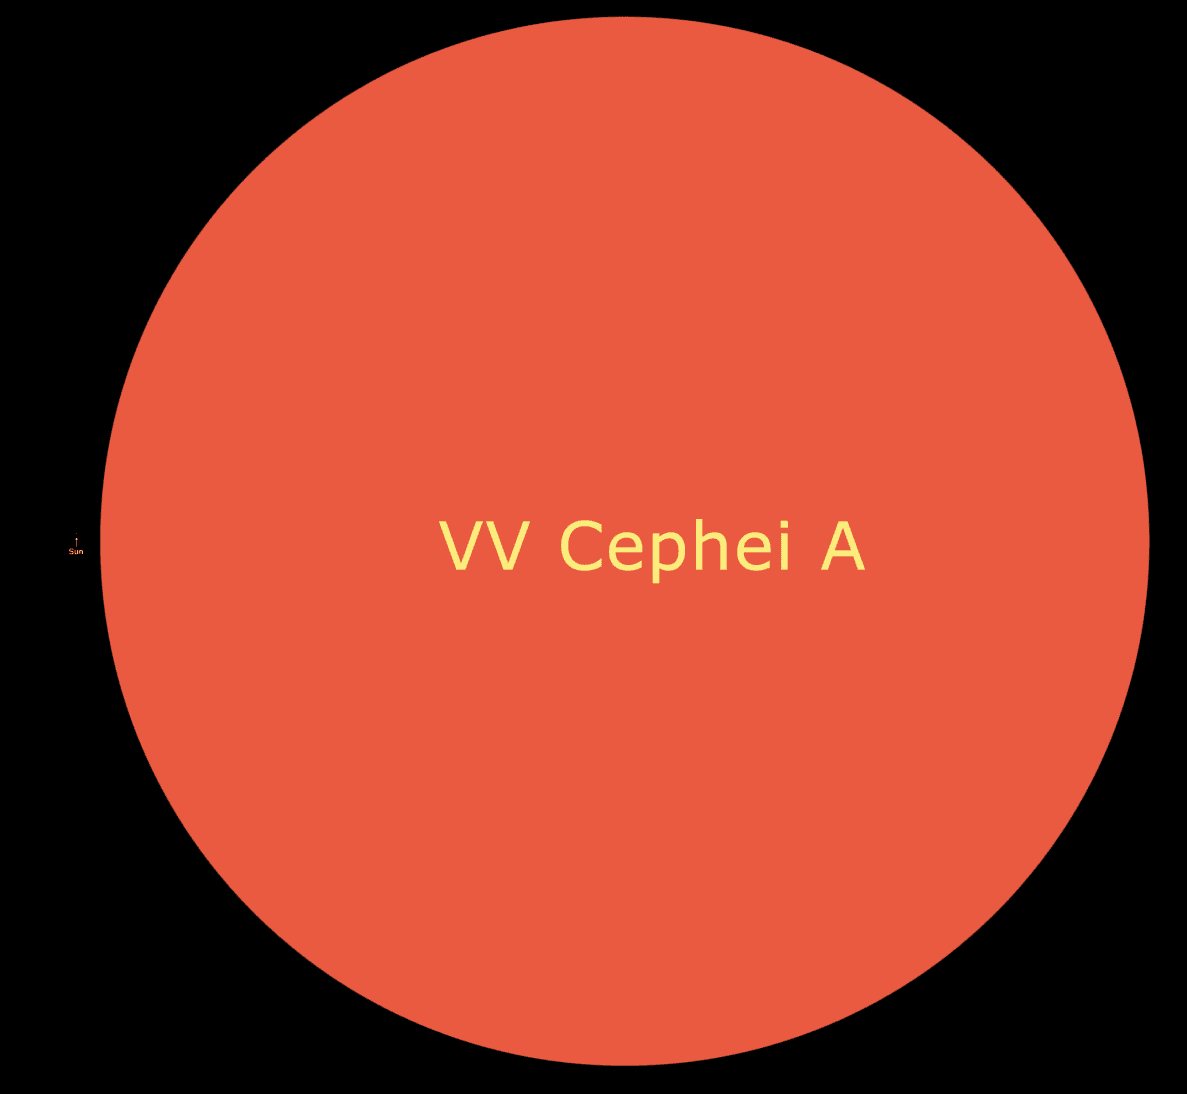 صورة توضح حجم الشمس مقارنة بأحد النجوم العملاقة المعروف بإسم (VV Cephei A)